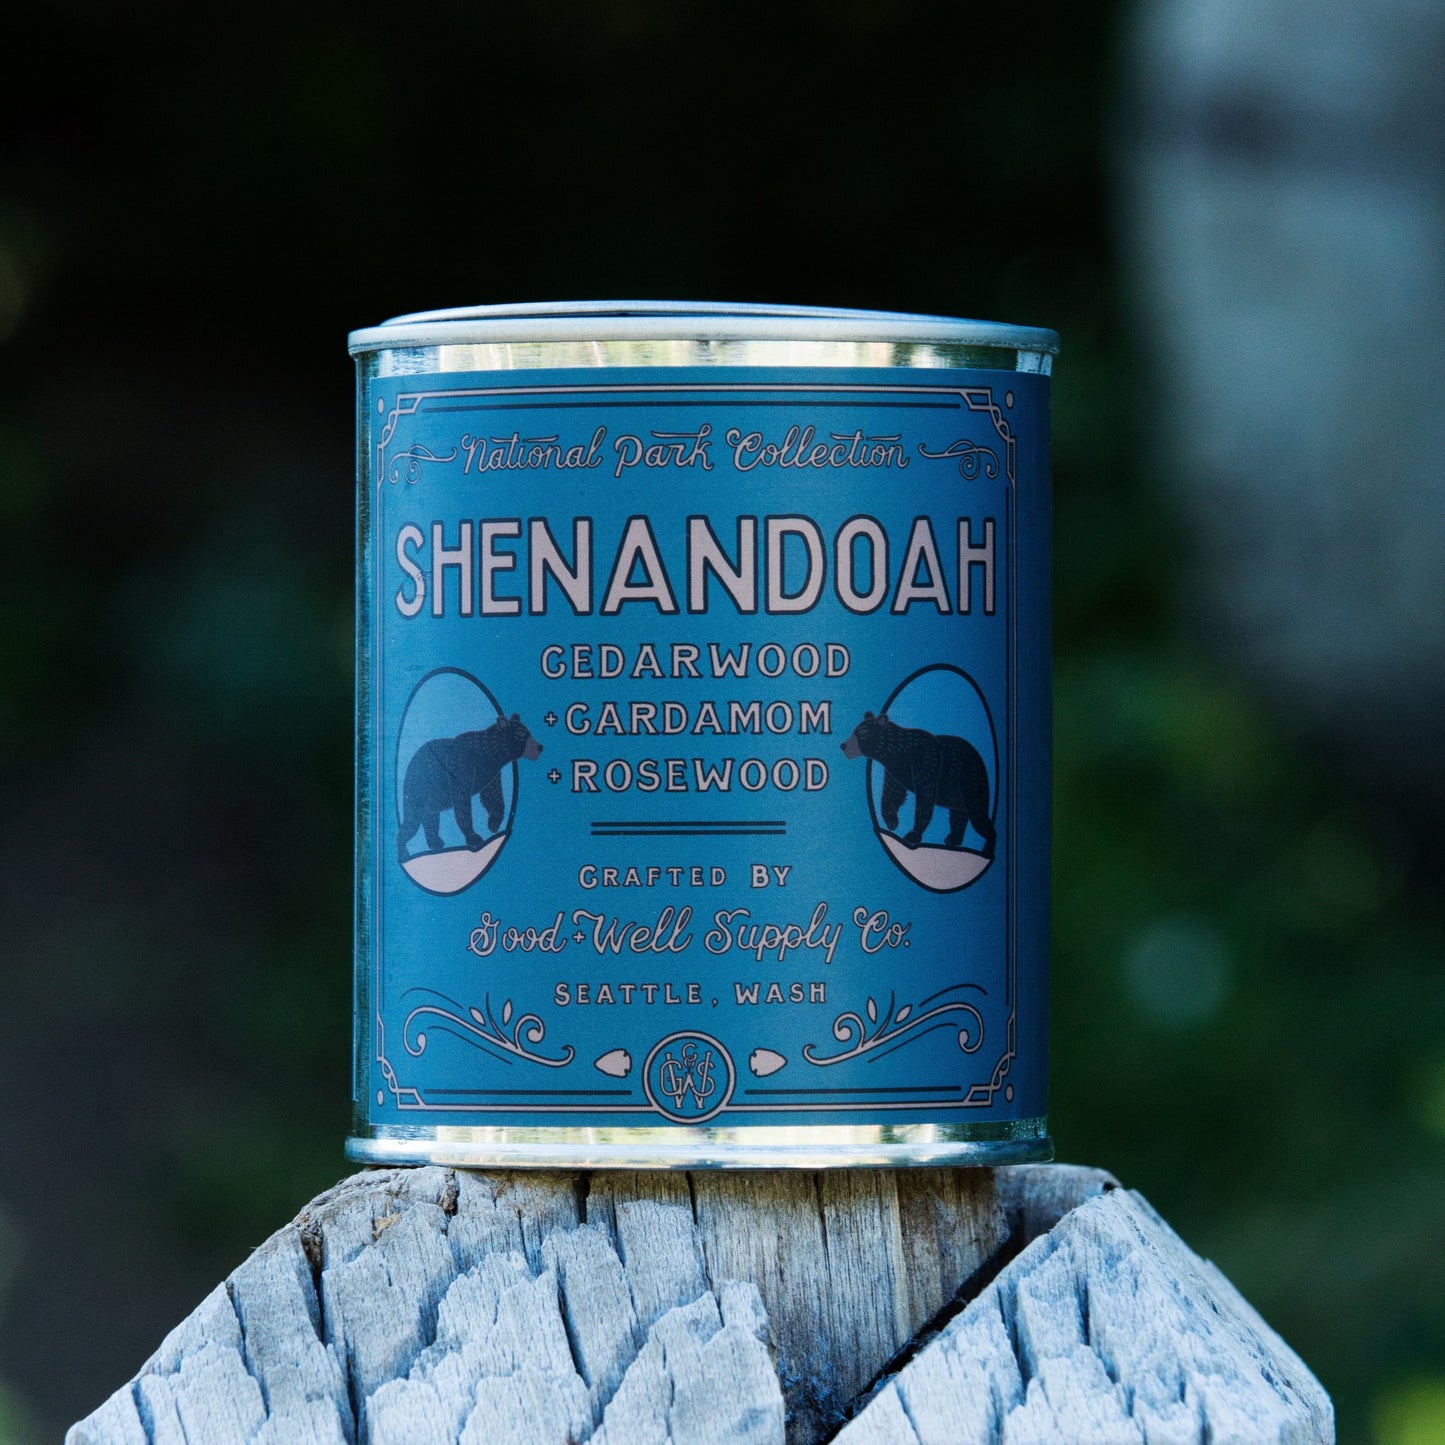 Shenandoah Candle